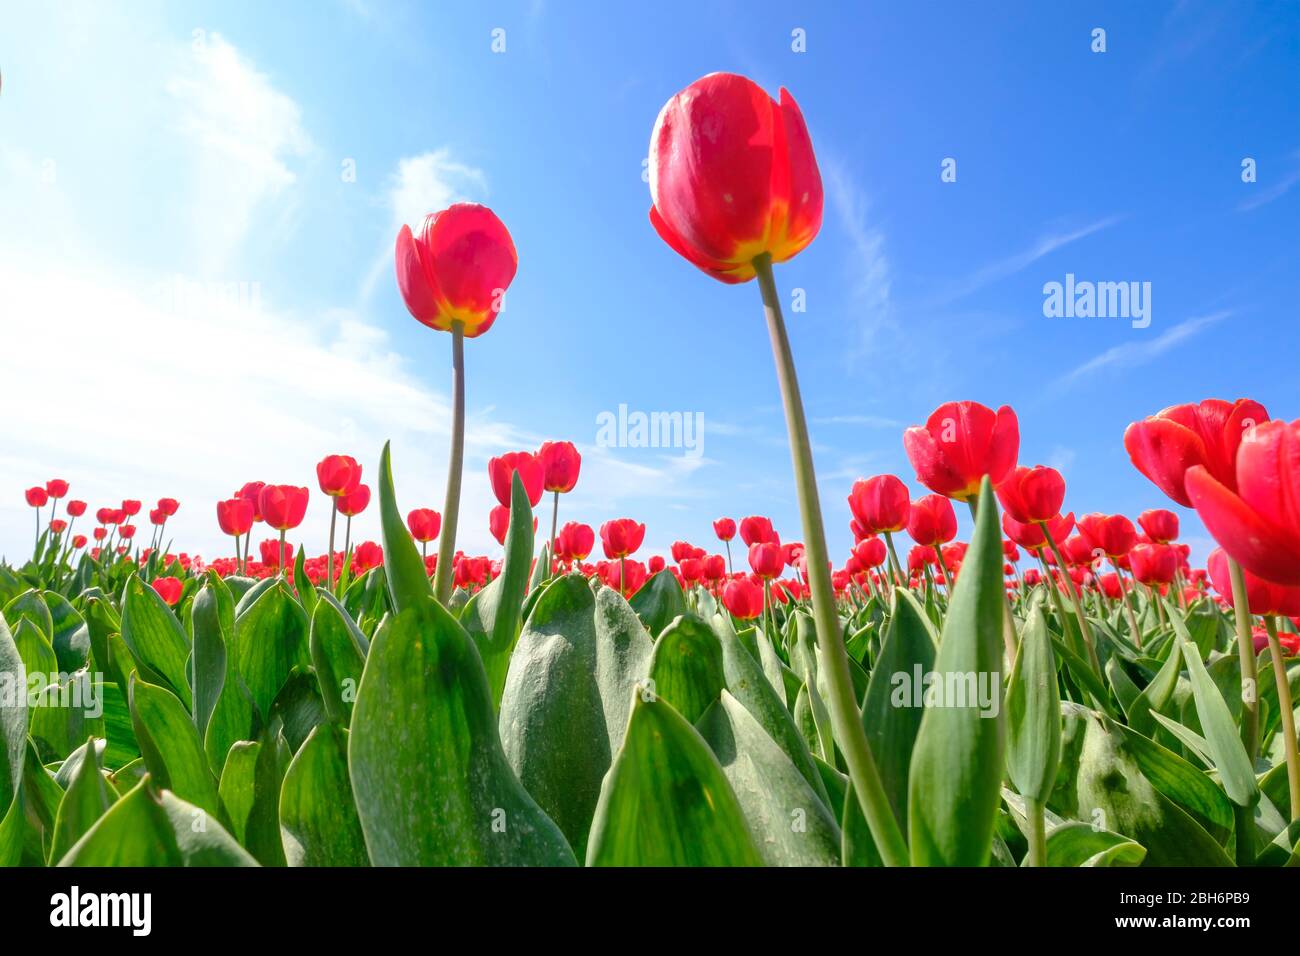 Tulipes rouges dans le champ avec une lentille grand angle de dessous, très beau ciel bleu nuageux aux Pays-Bas. Mise au point sélective. Banque D'Images